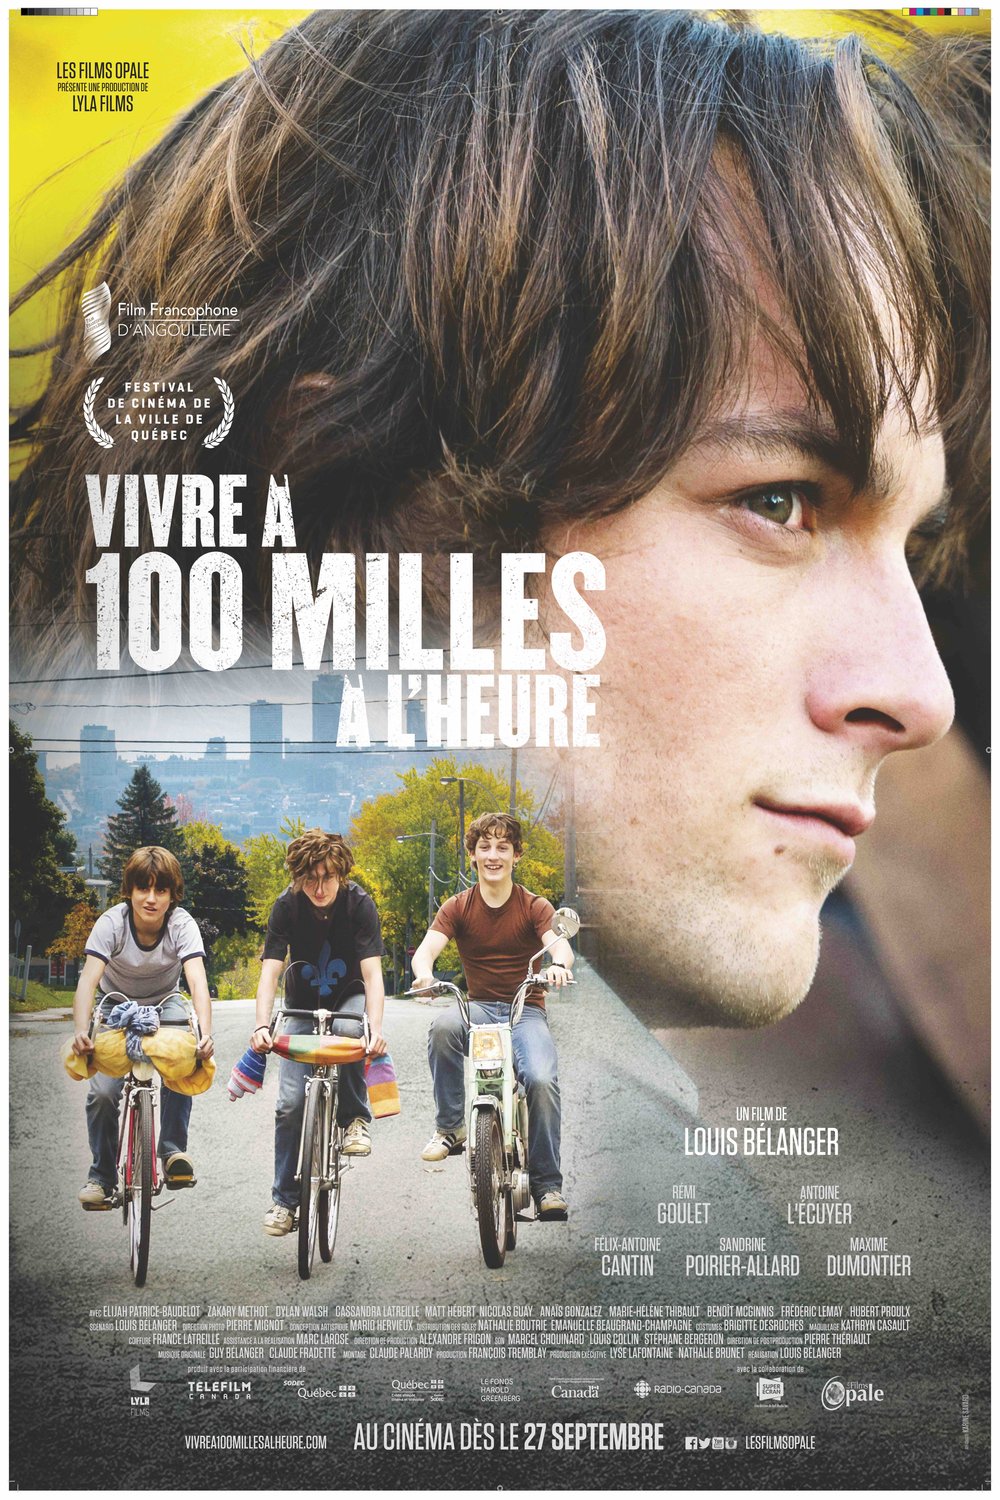 Poster of the movie Vivre à 100 milles à l'heure